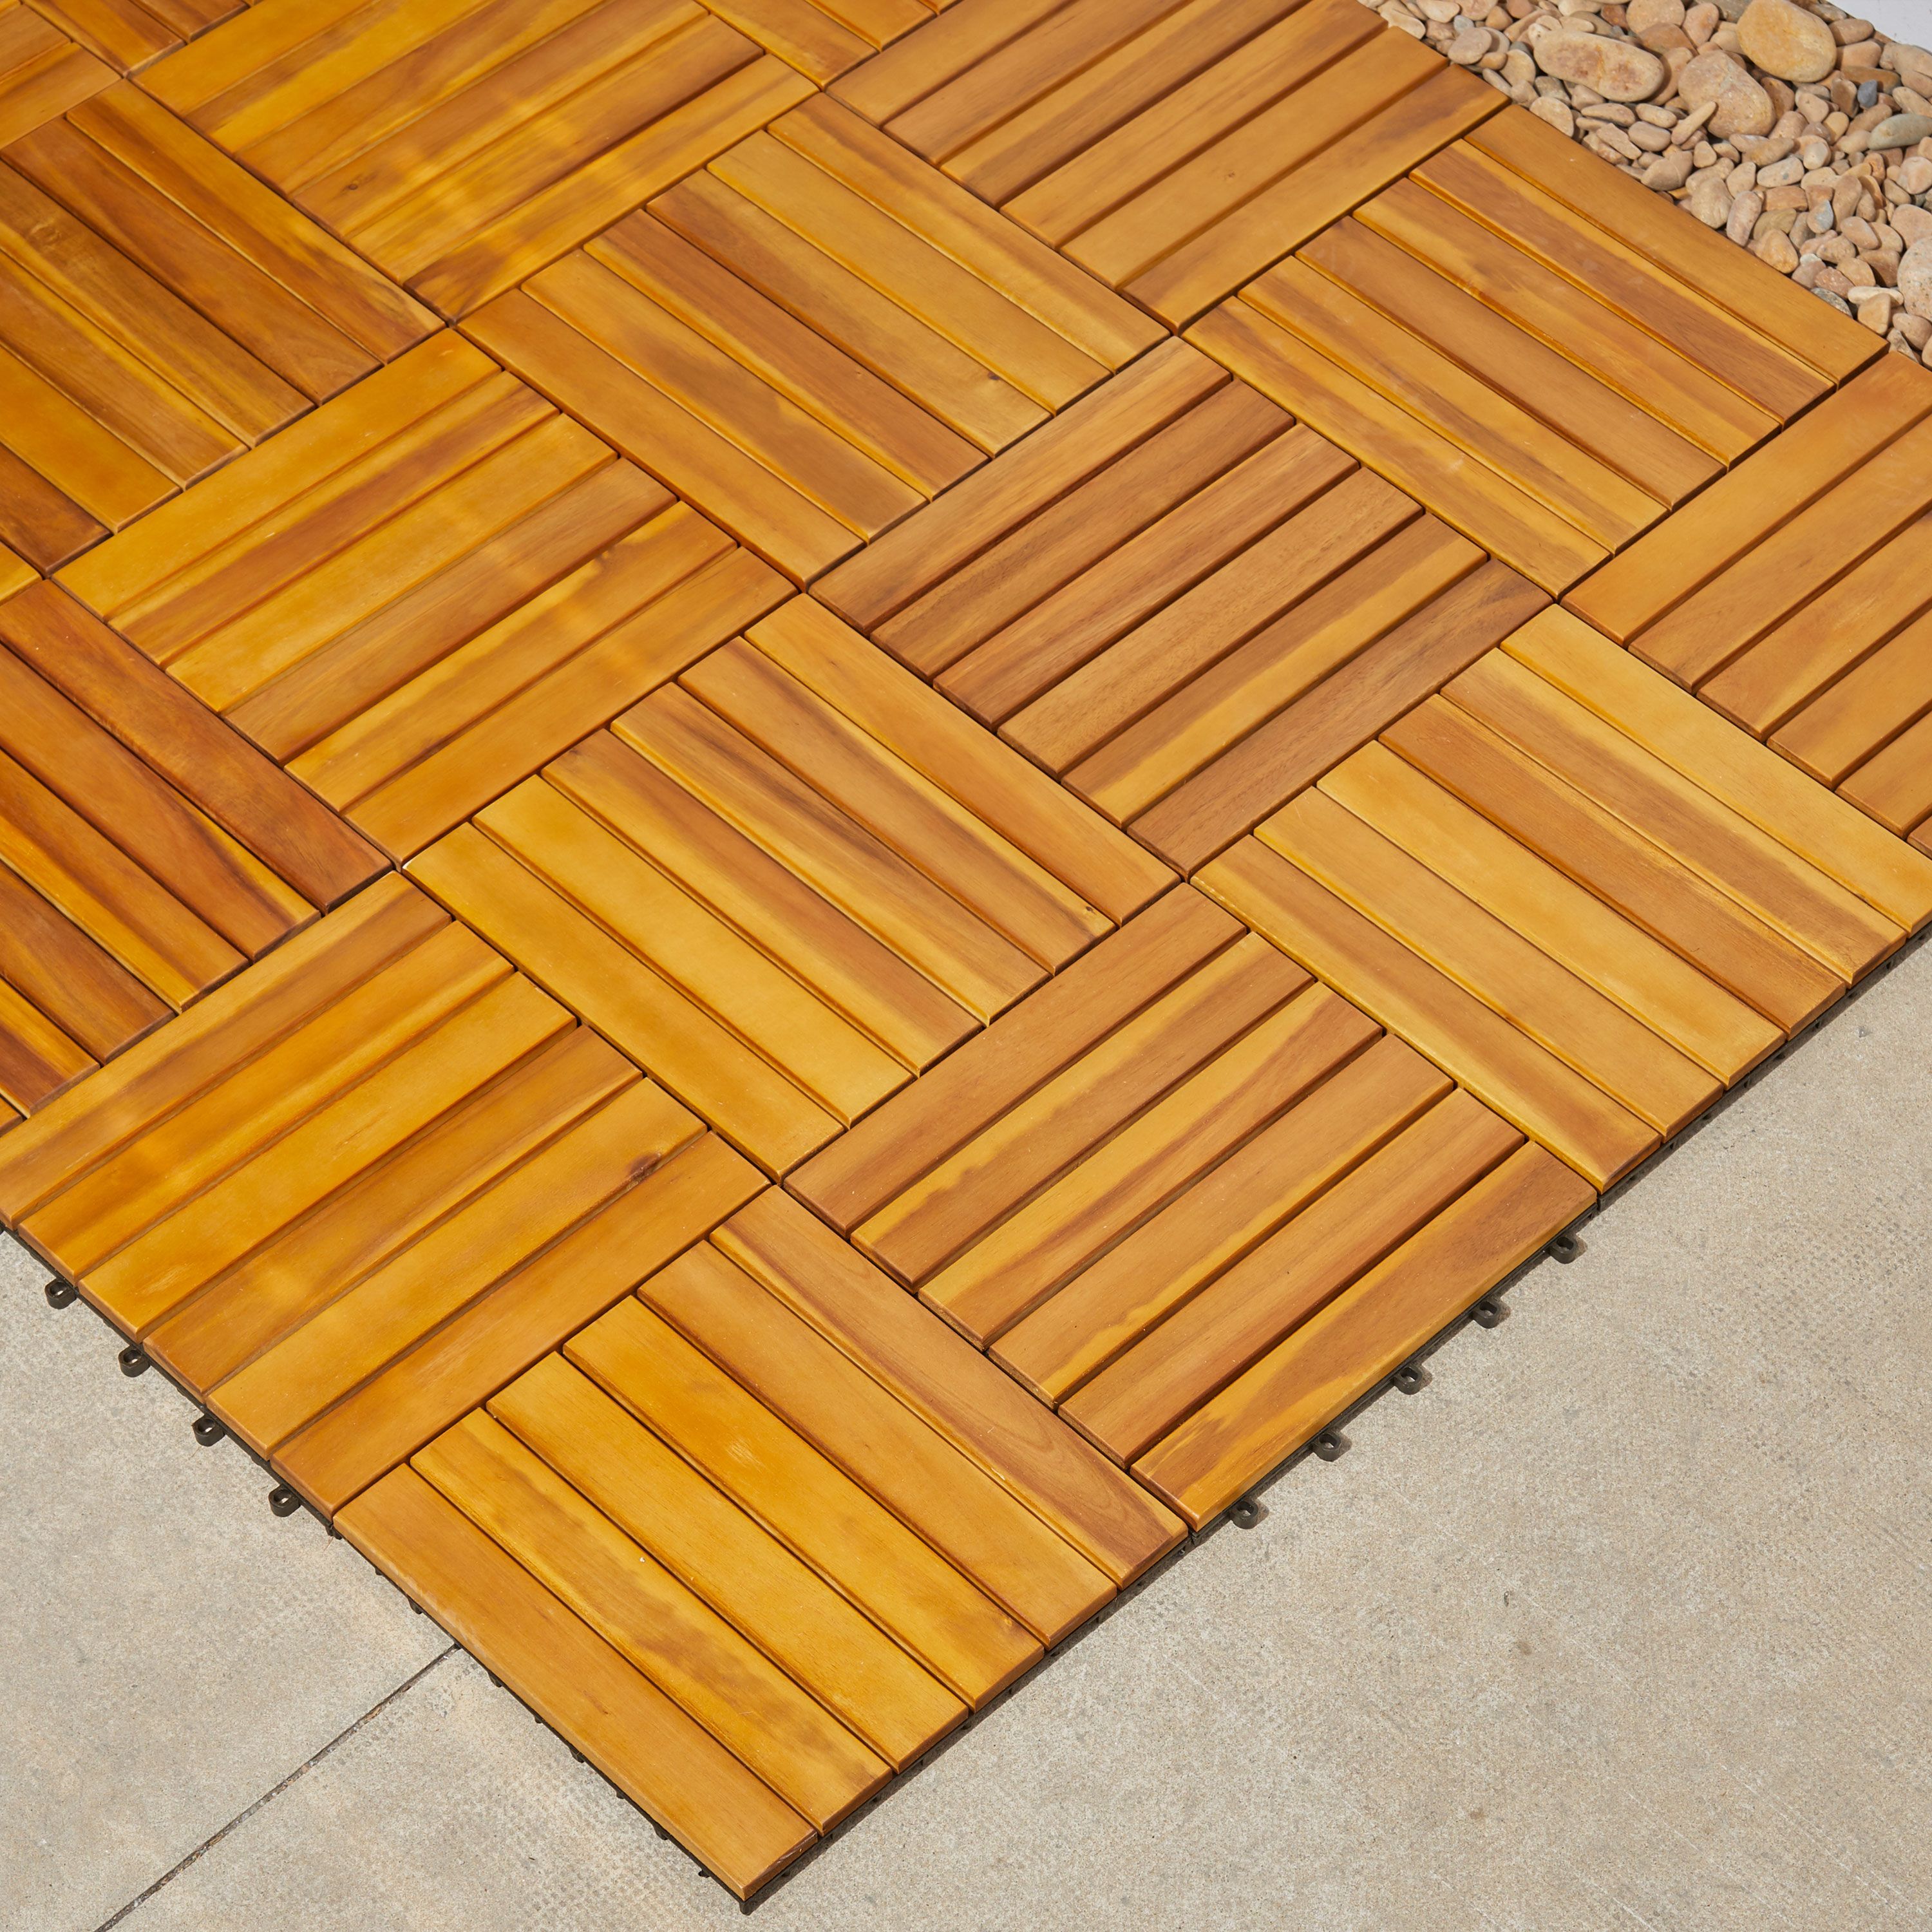 6 Slat Acacia Interlocking Deck Tile Set of 10 Tiles - image 4 of 4